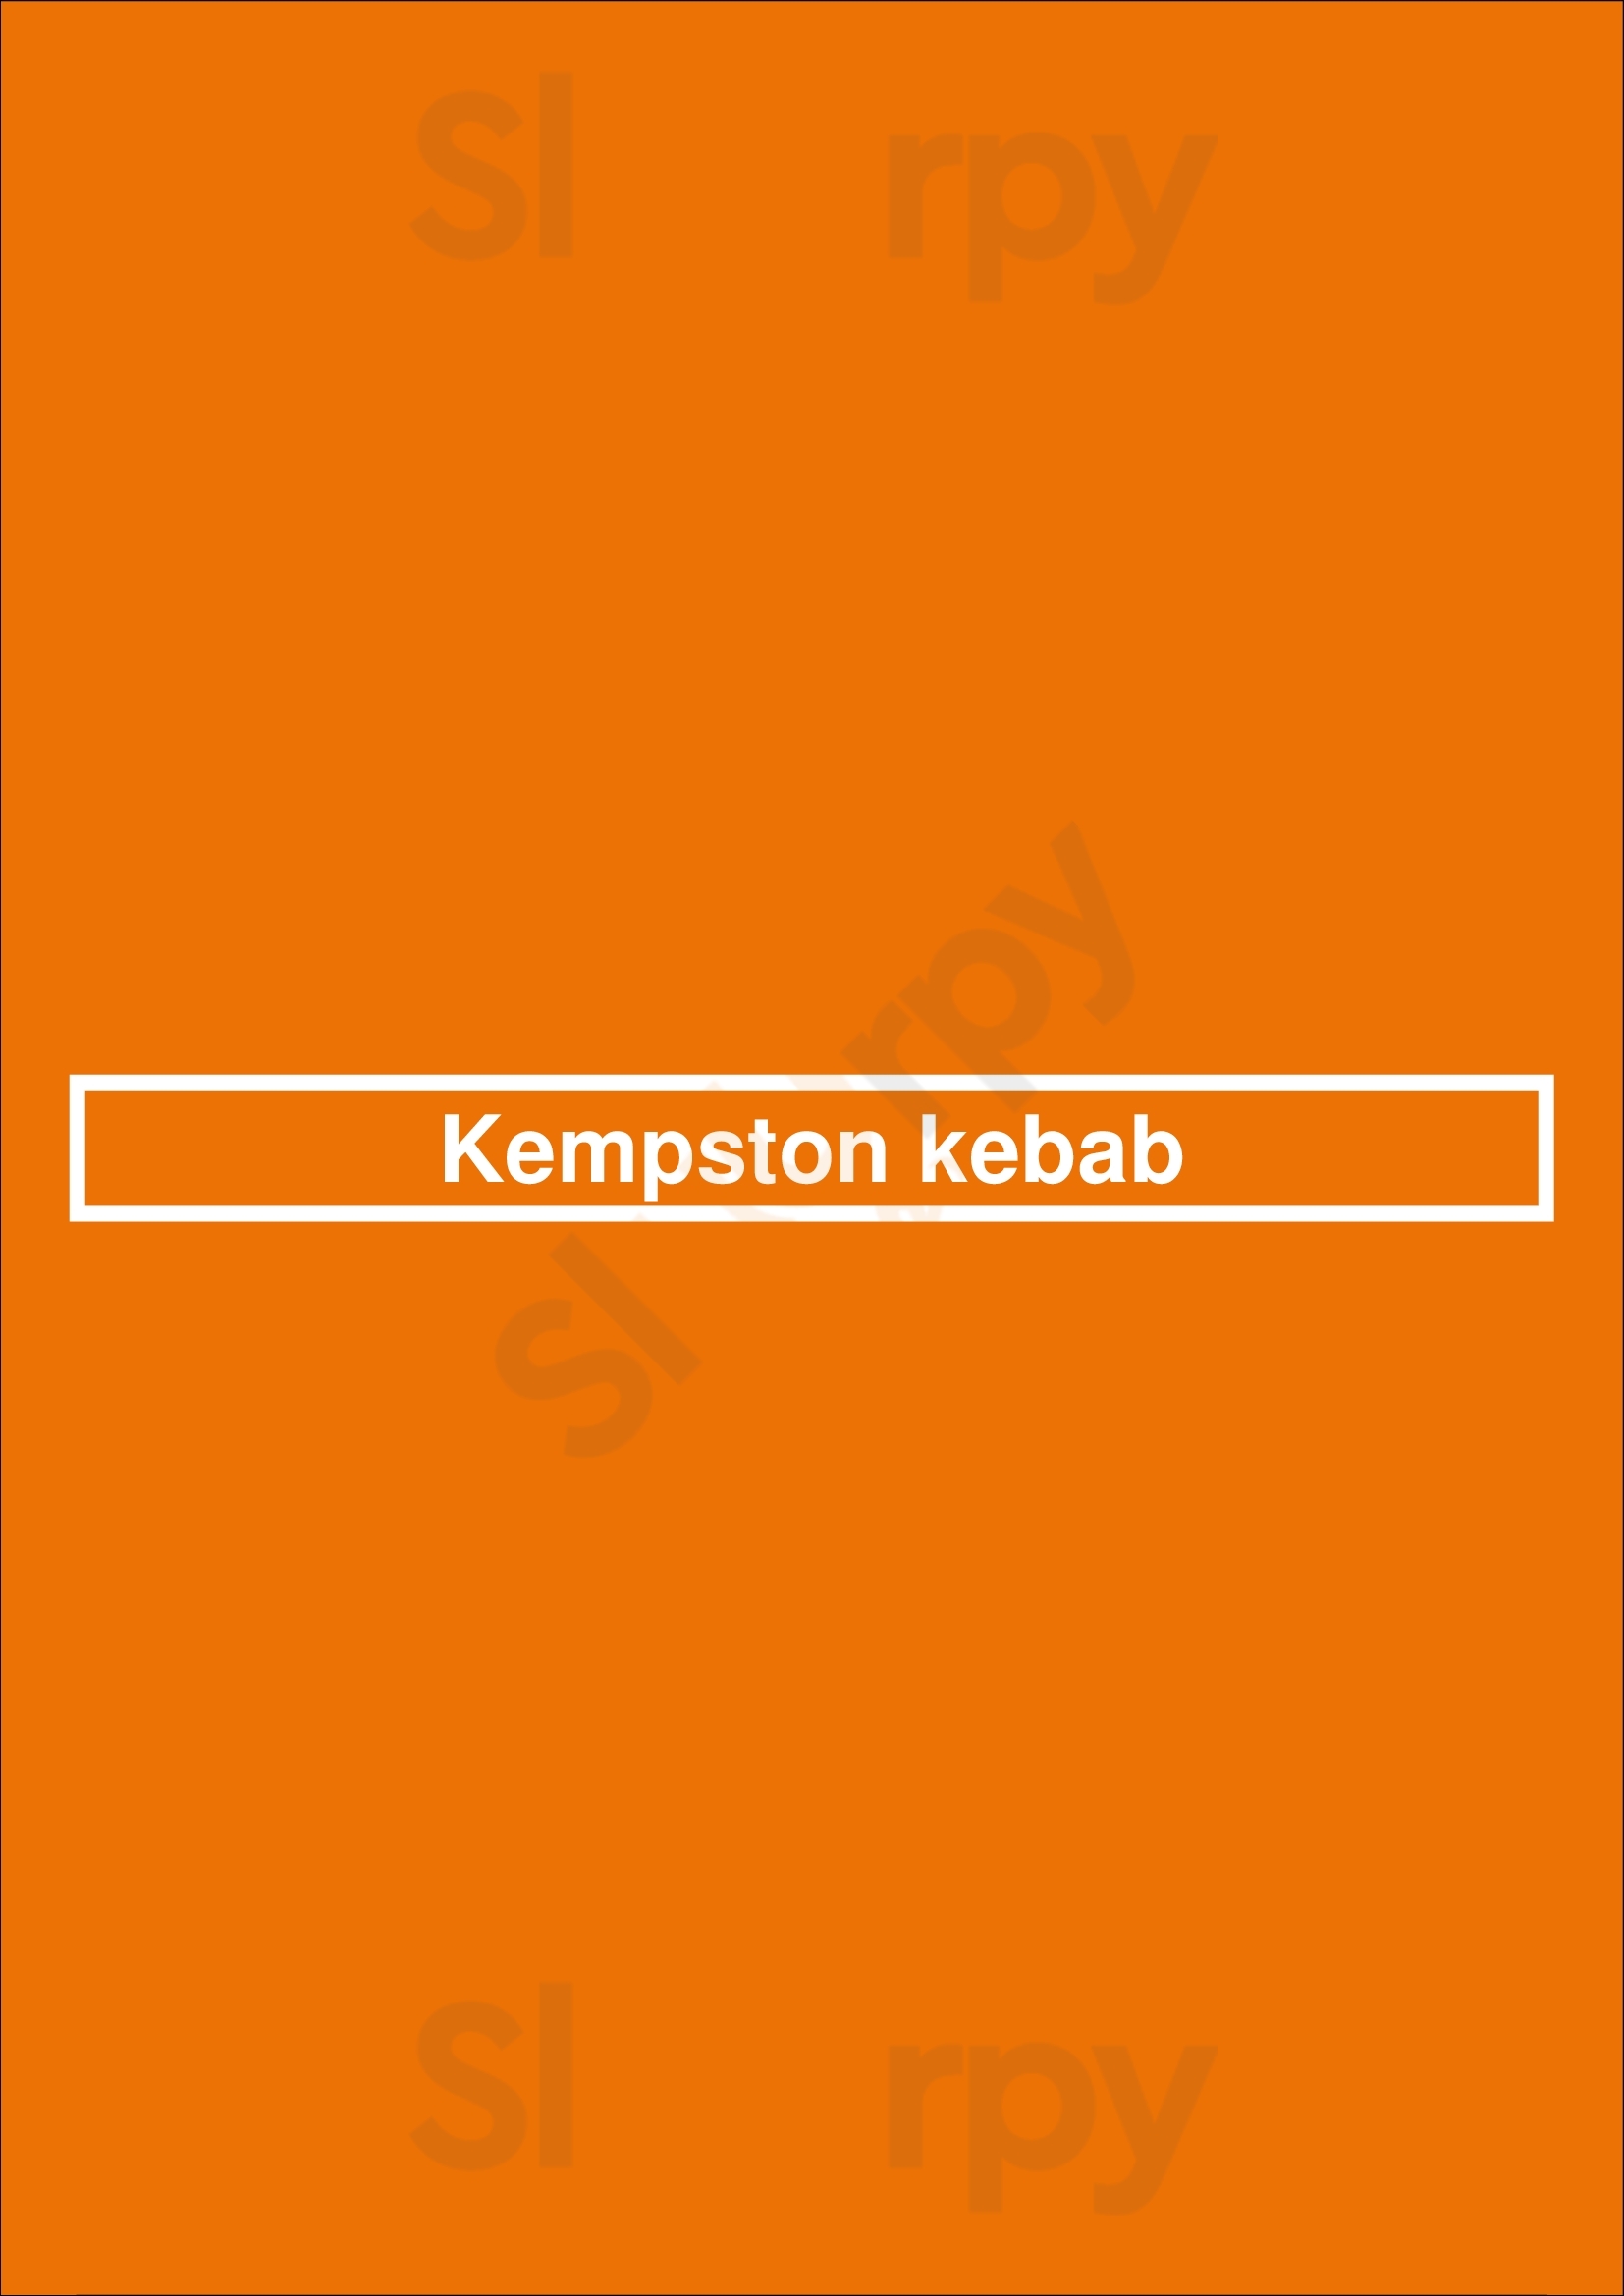 Kempston Kebab Bedford Menu - 1